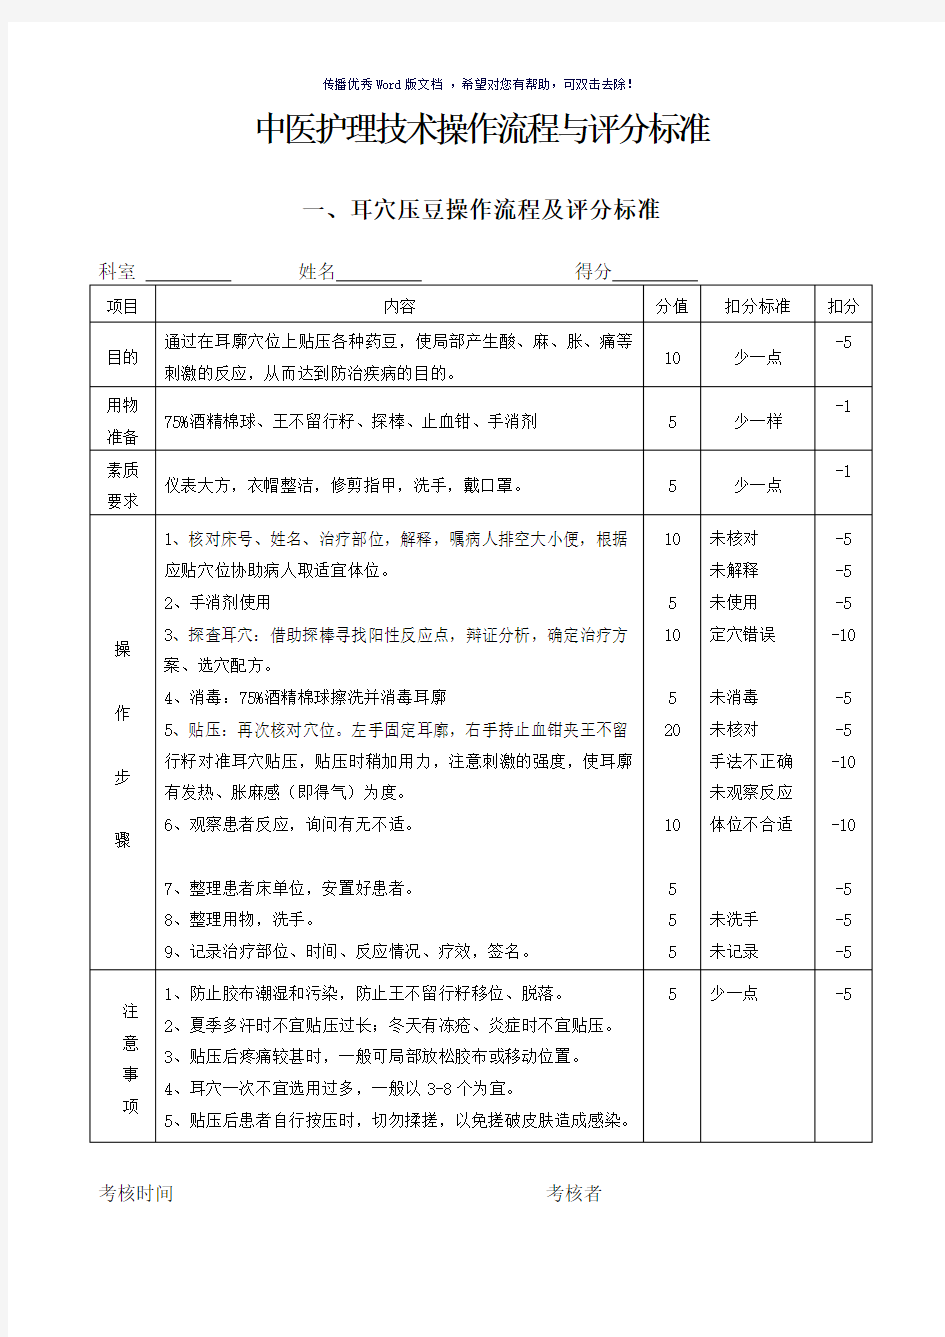 中医护理技术操作流程与评分标准(参考模板)